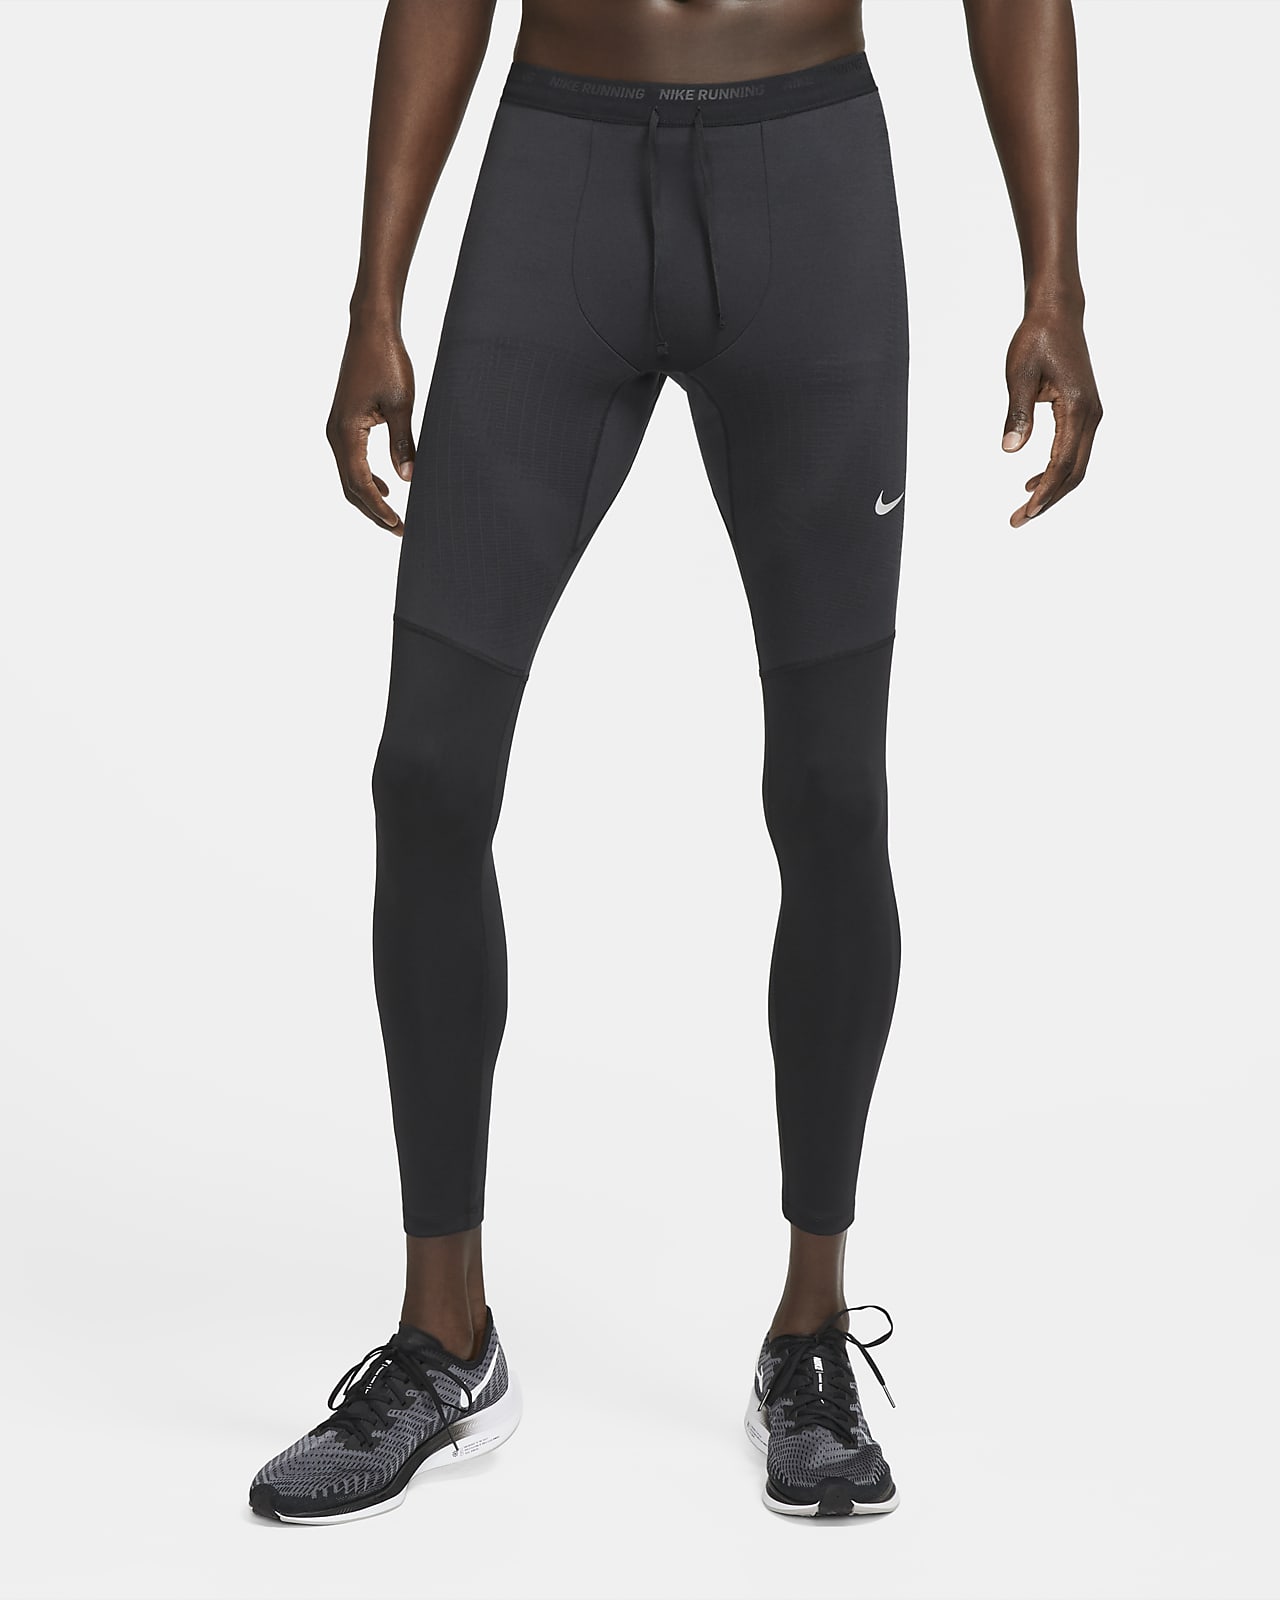 Ανδρικό κολάν για τρέξιμο Dri-FIT Nike Phenom